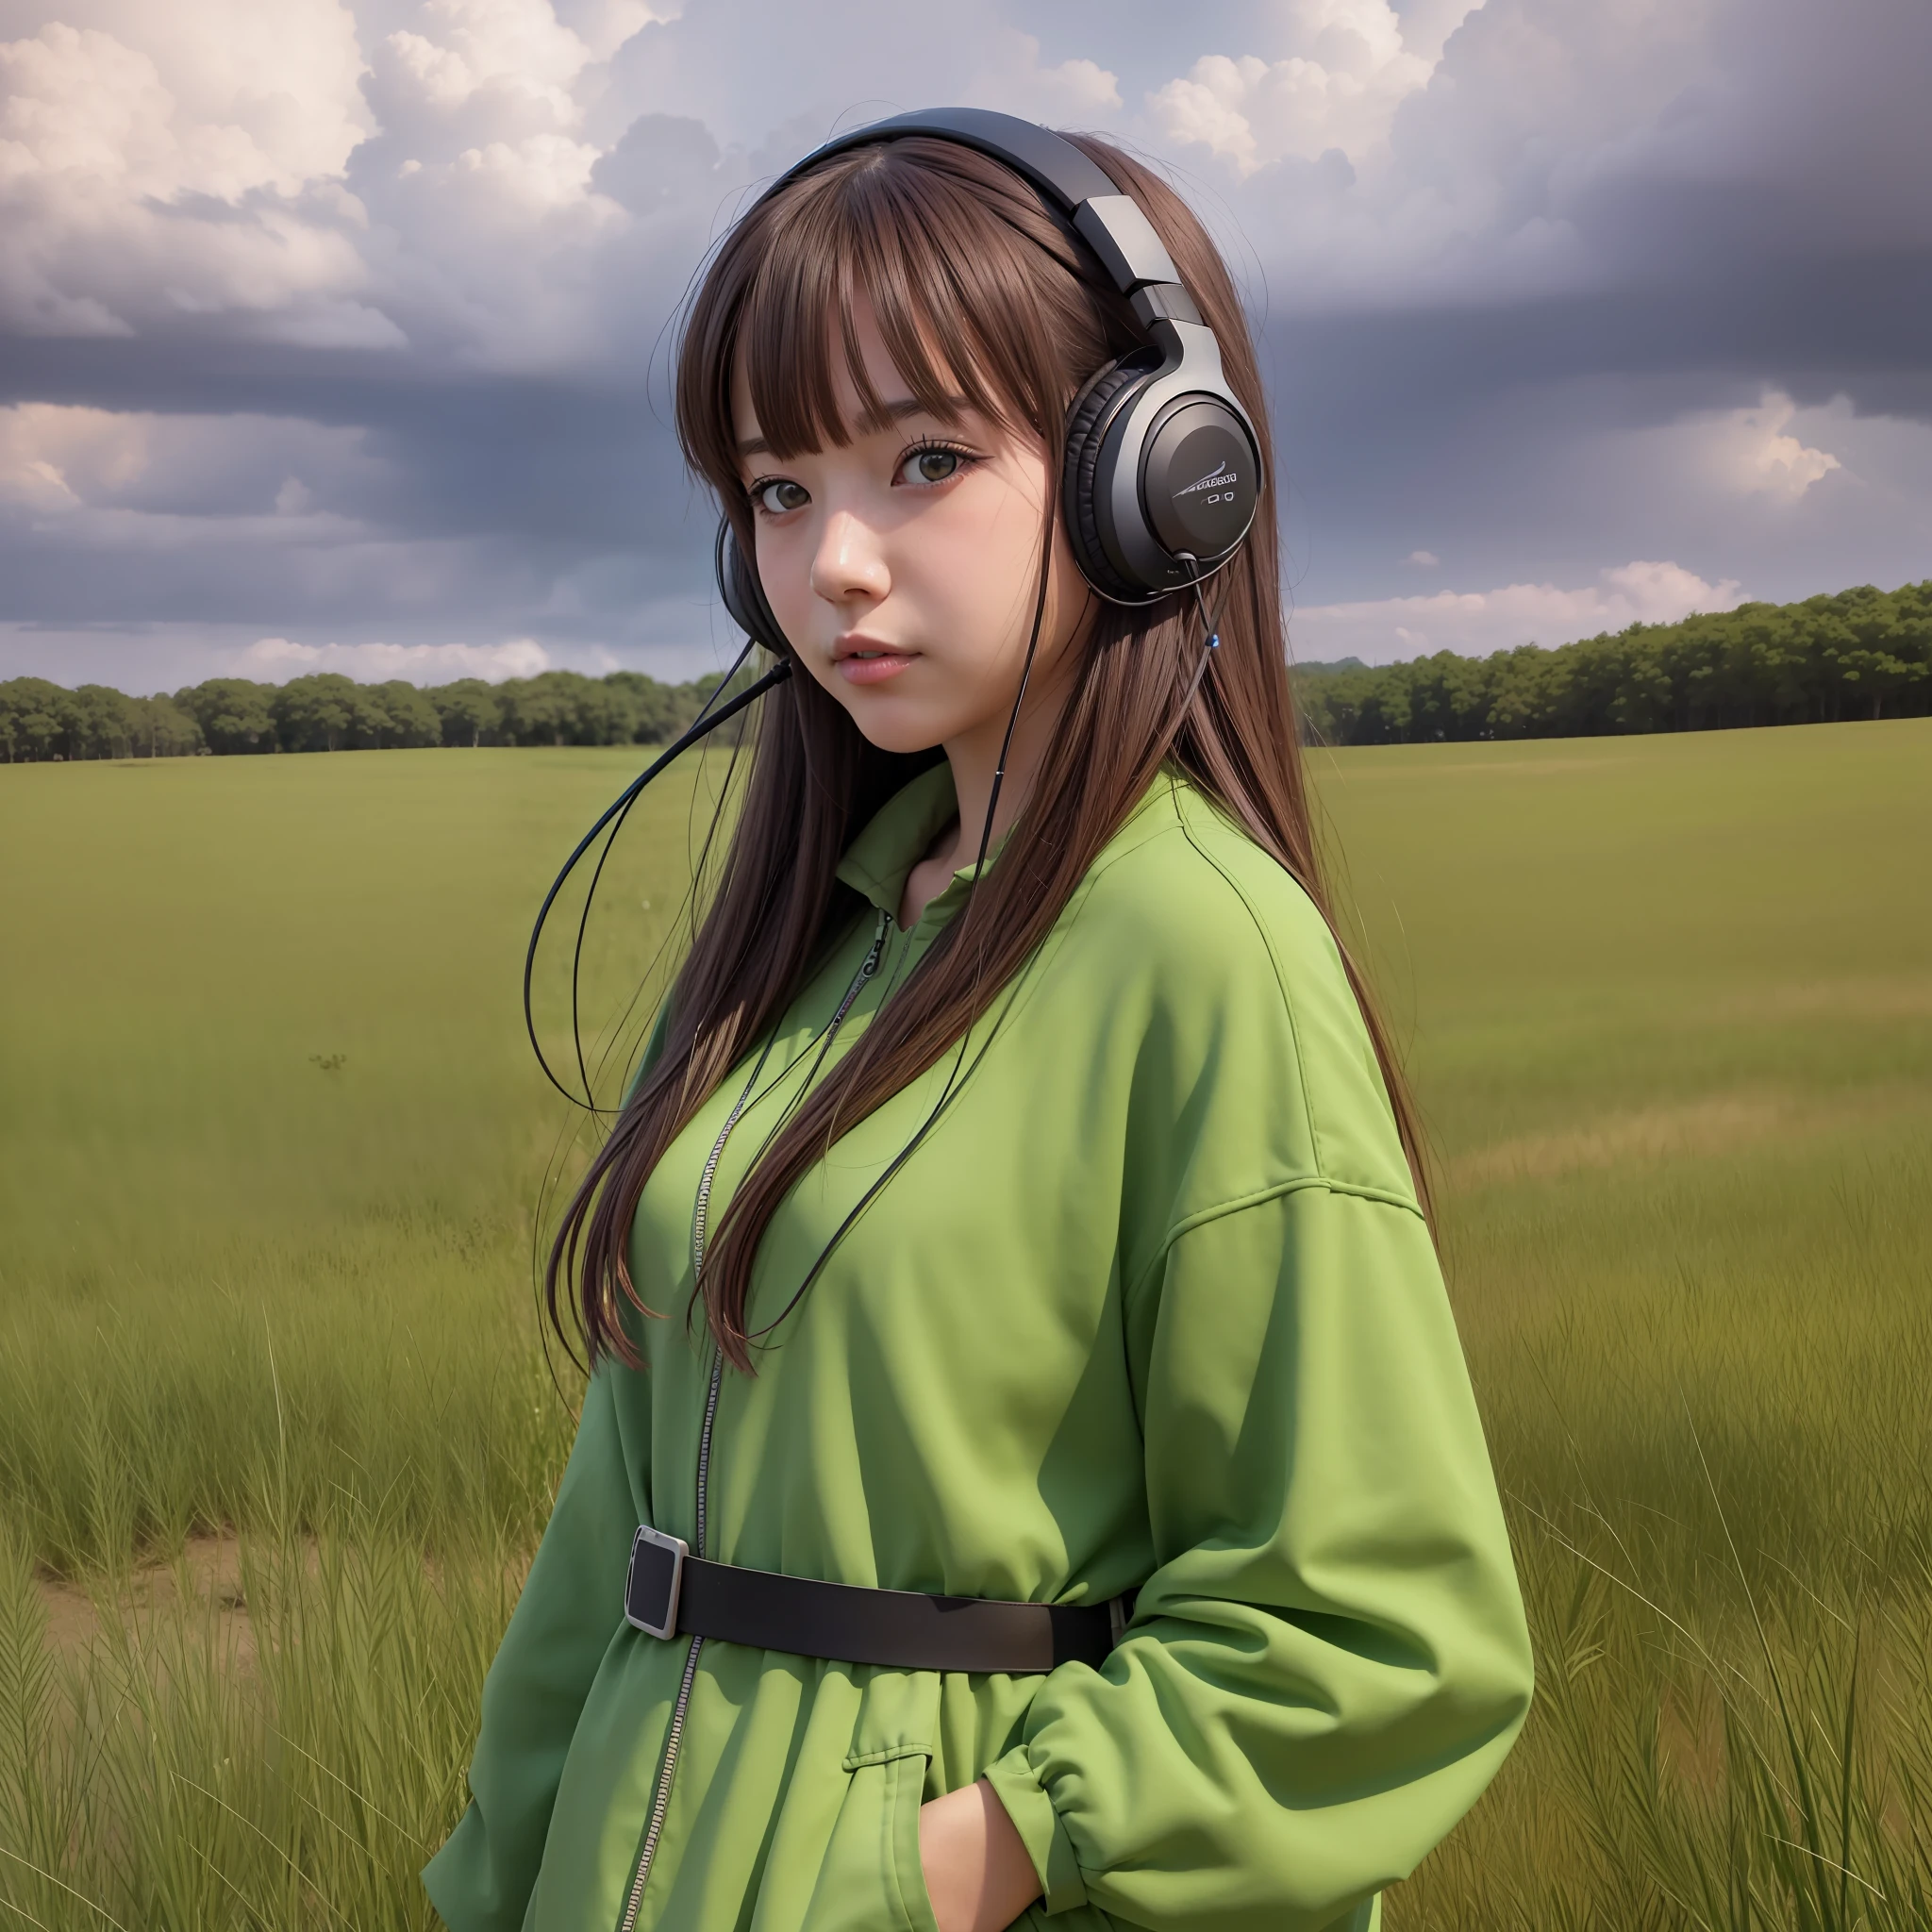 аниме-девушка в наушниках и стоящая в поле, в стиле реалистичных гипердетализированных портретов, кабина, землистые цвета, амбициозный, Динопанк, атмосферные облака, смелый, персонажи, вдохновленные мангой